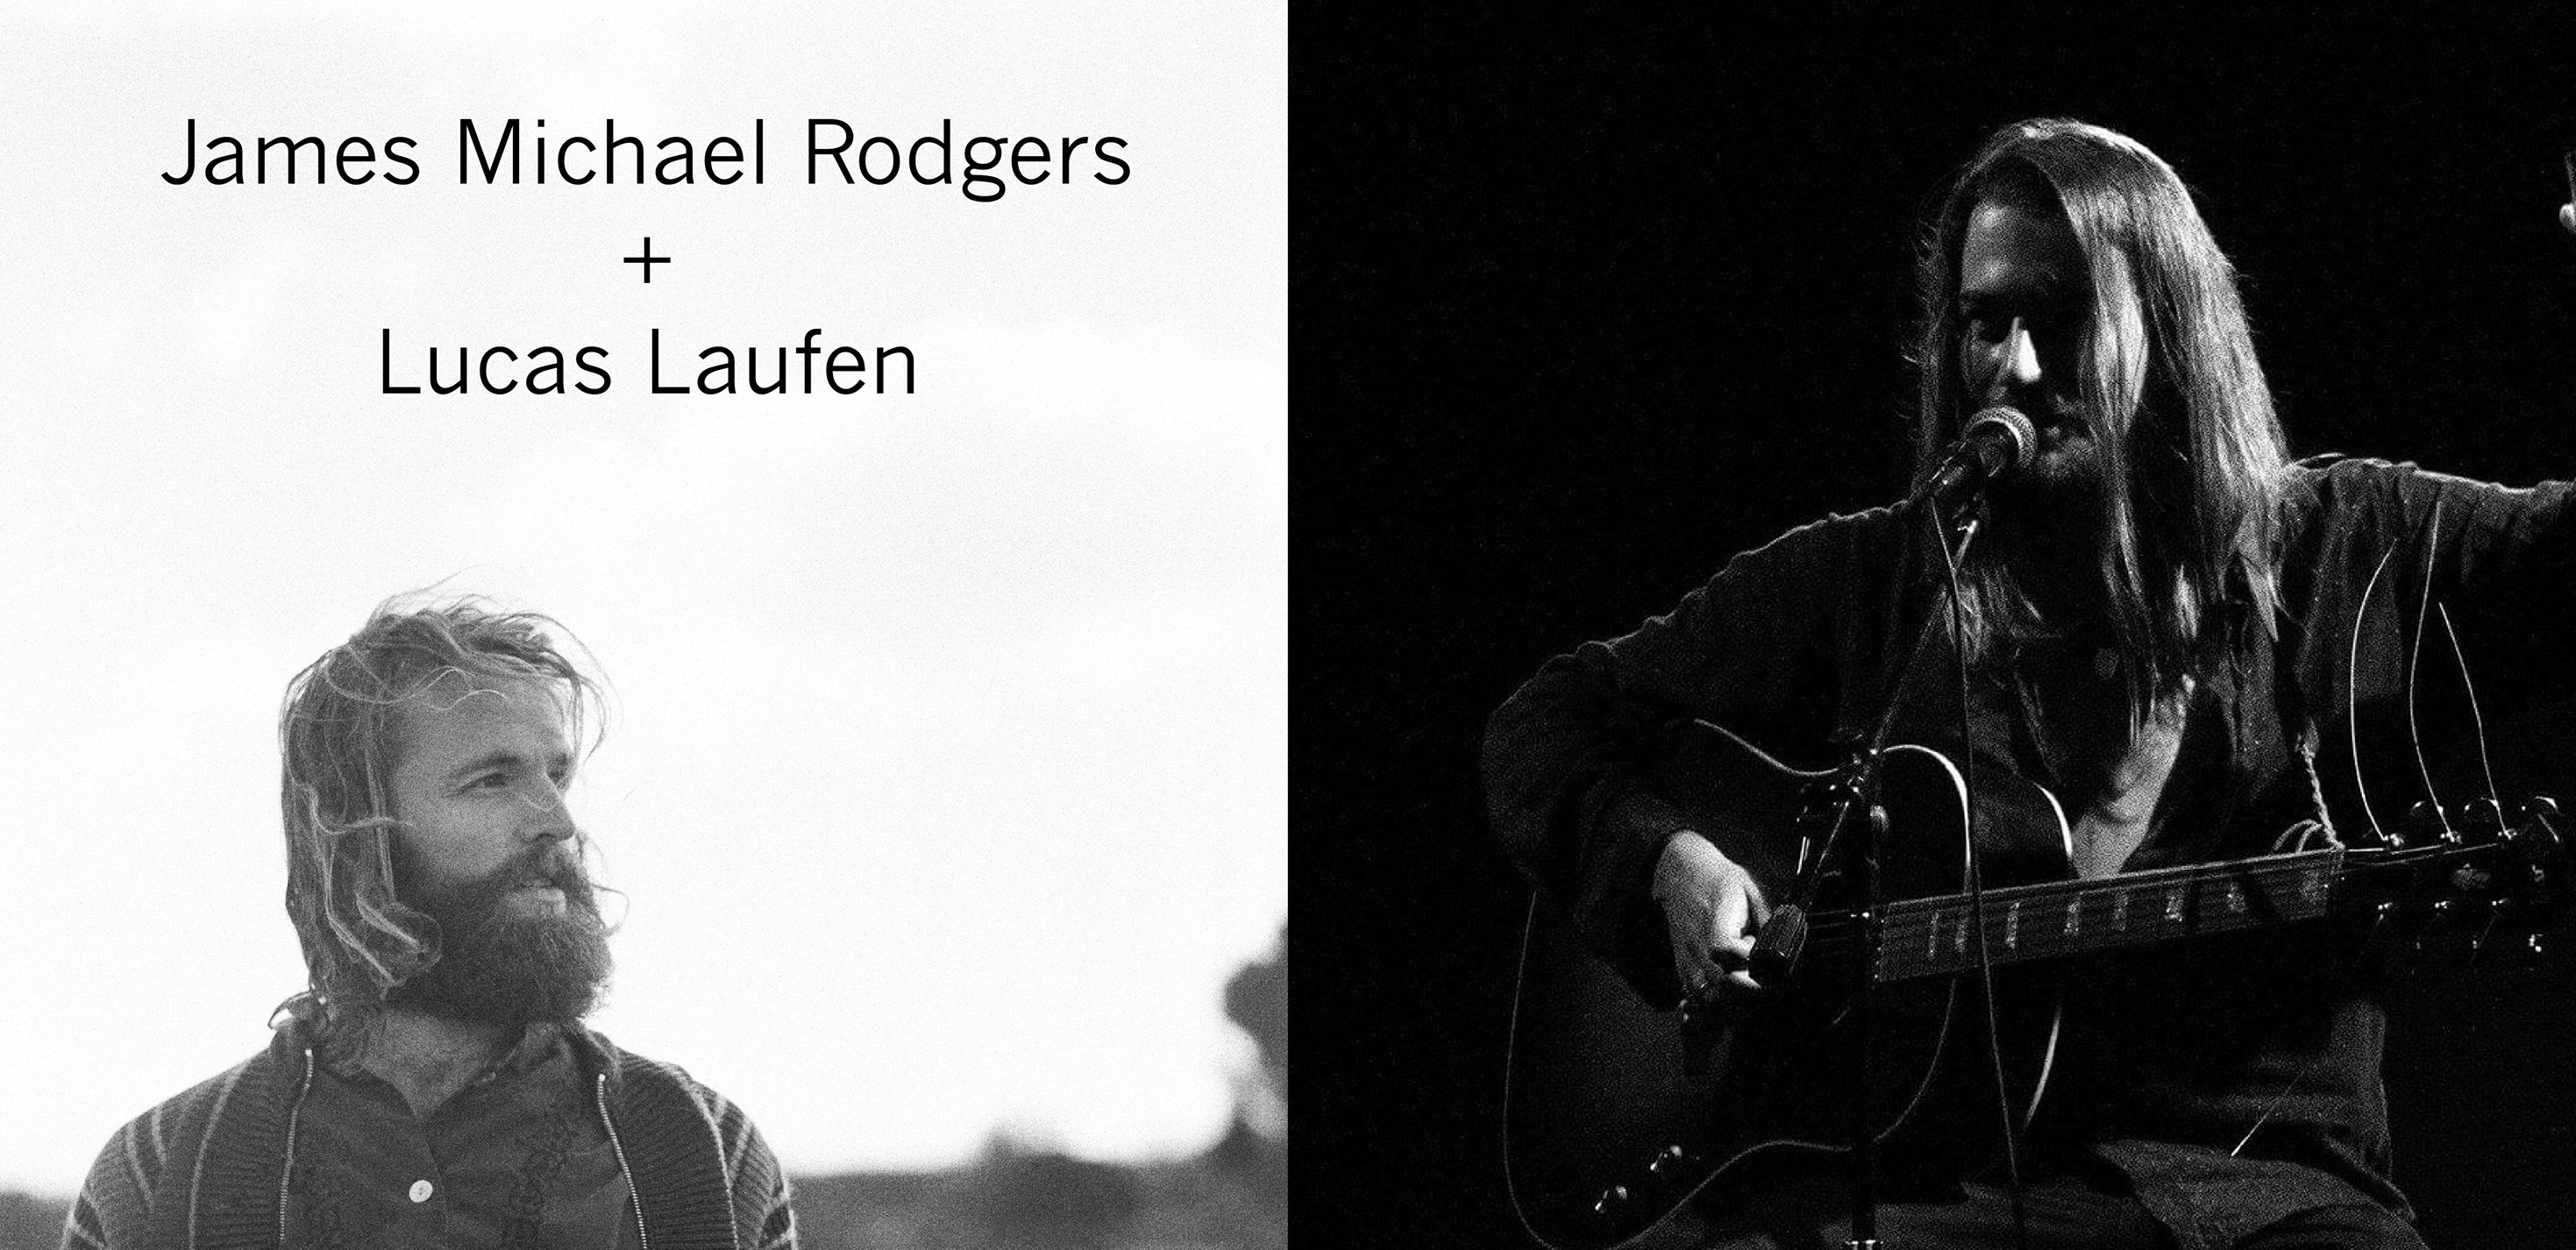 James Michael Rodgers + Lucas Laufen